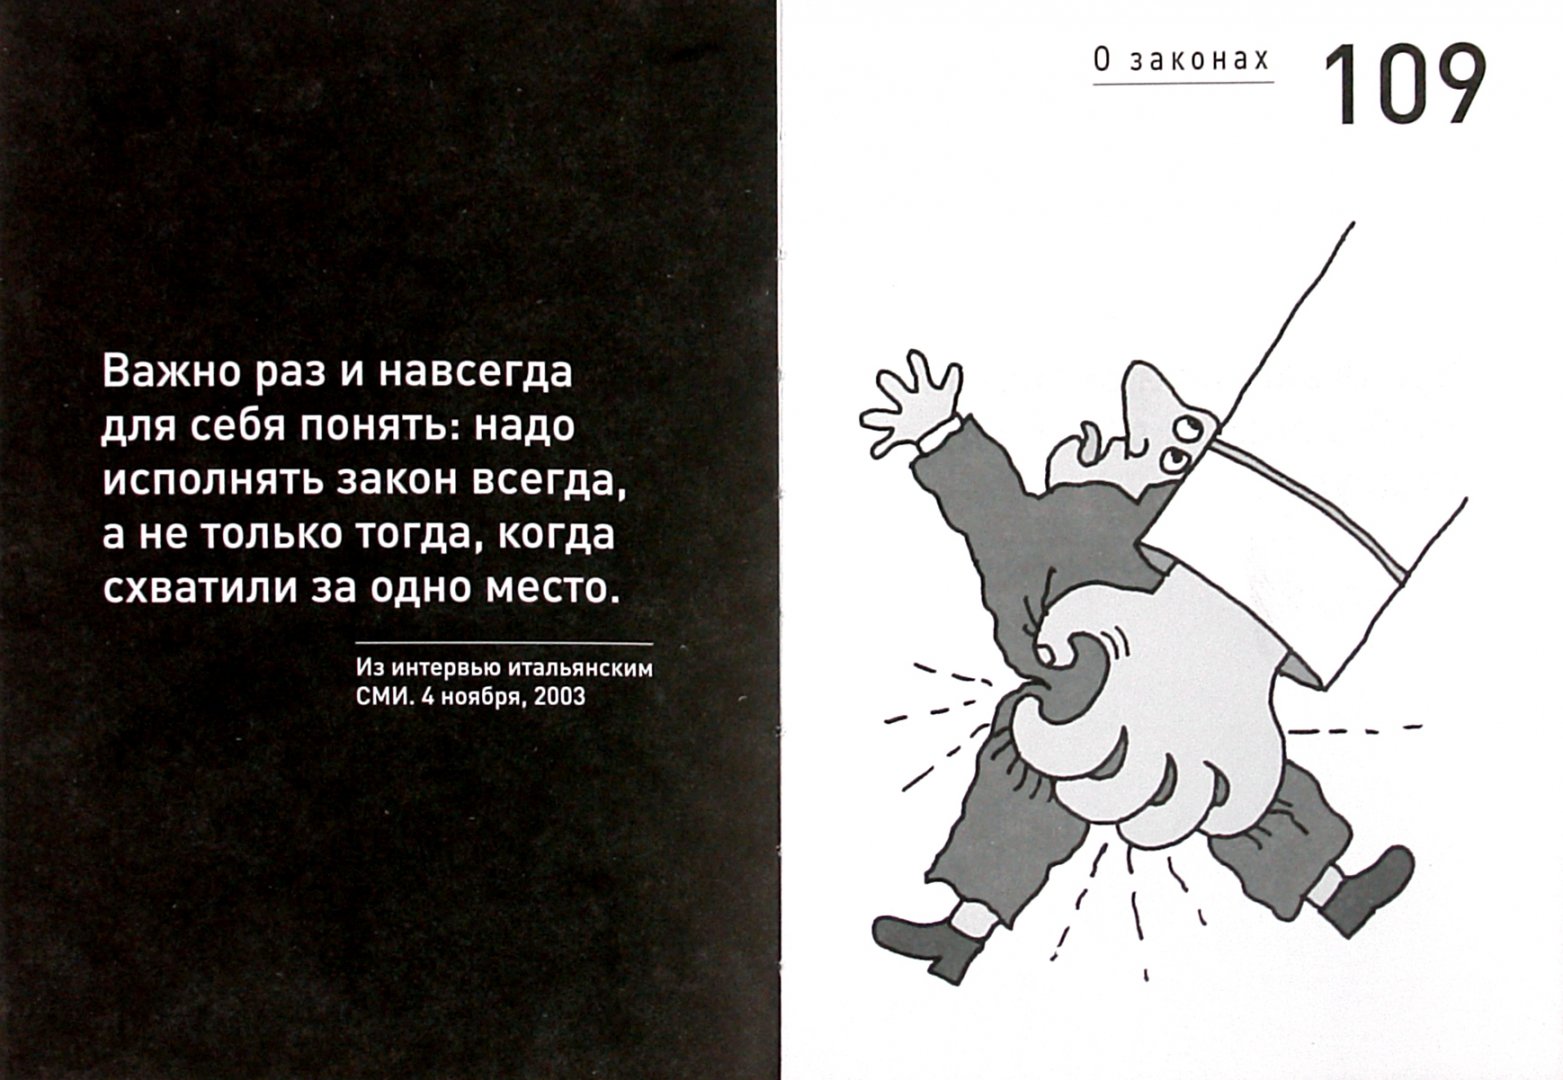 Иллюстрация 1 из 5 для Так говорил Путин: о себе, о народе, о Вселенной | Лабиринт - книги. Источник: Лабиринт